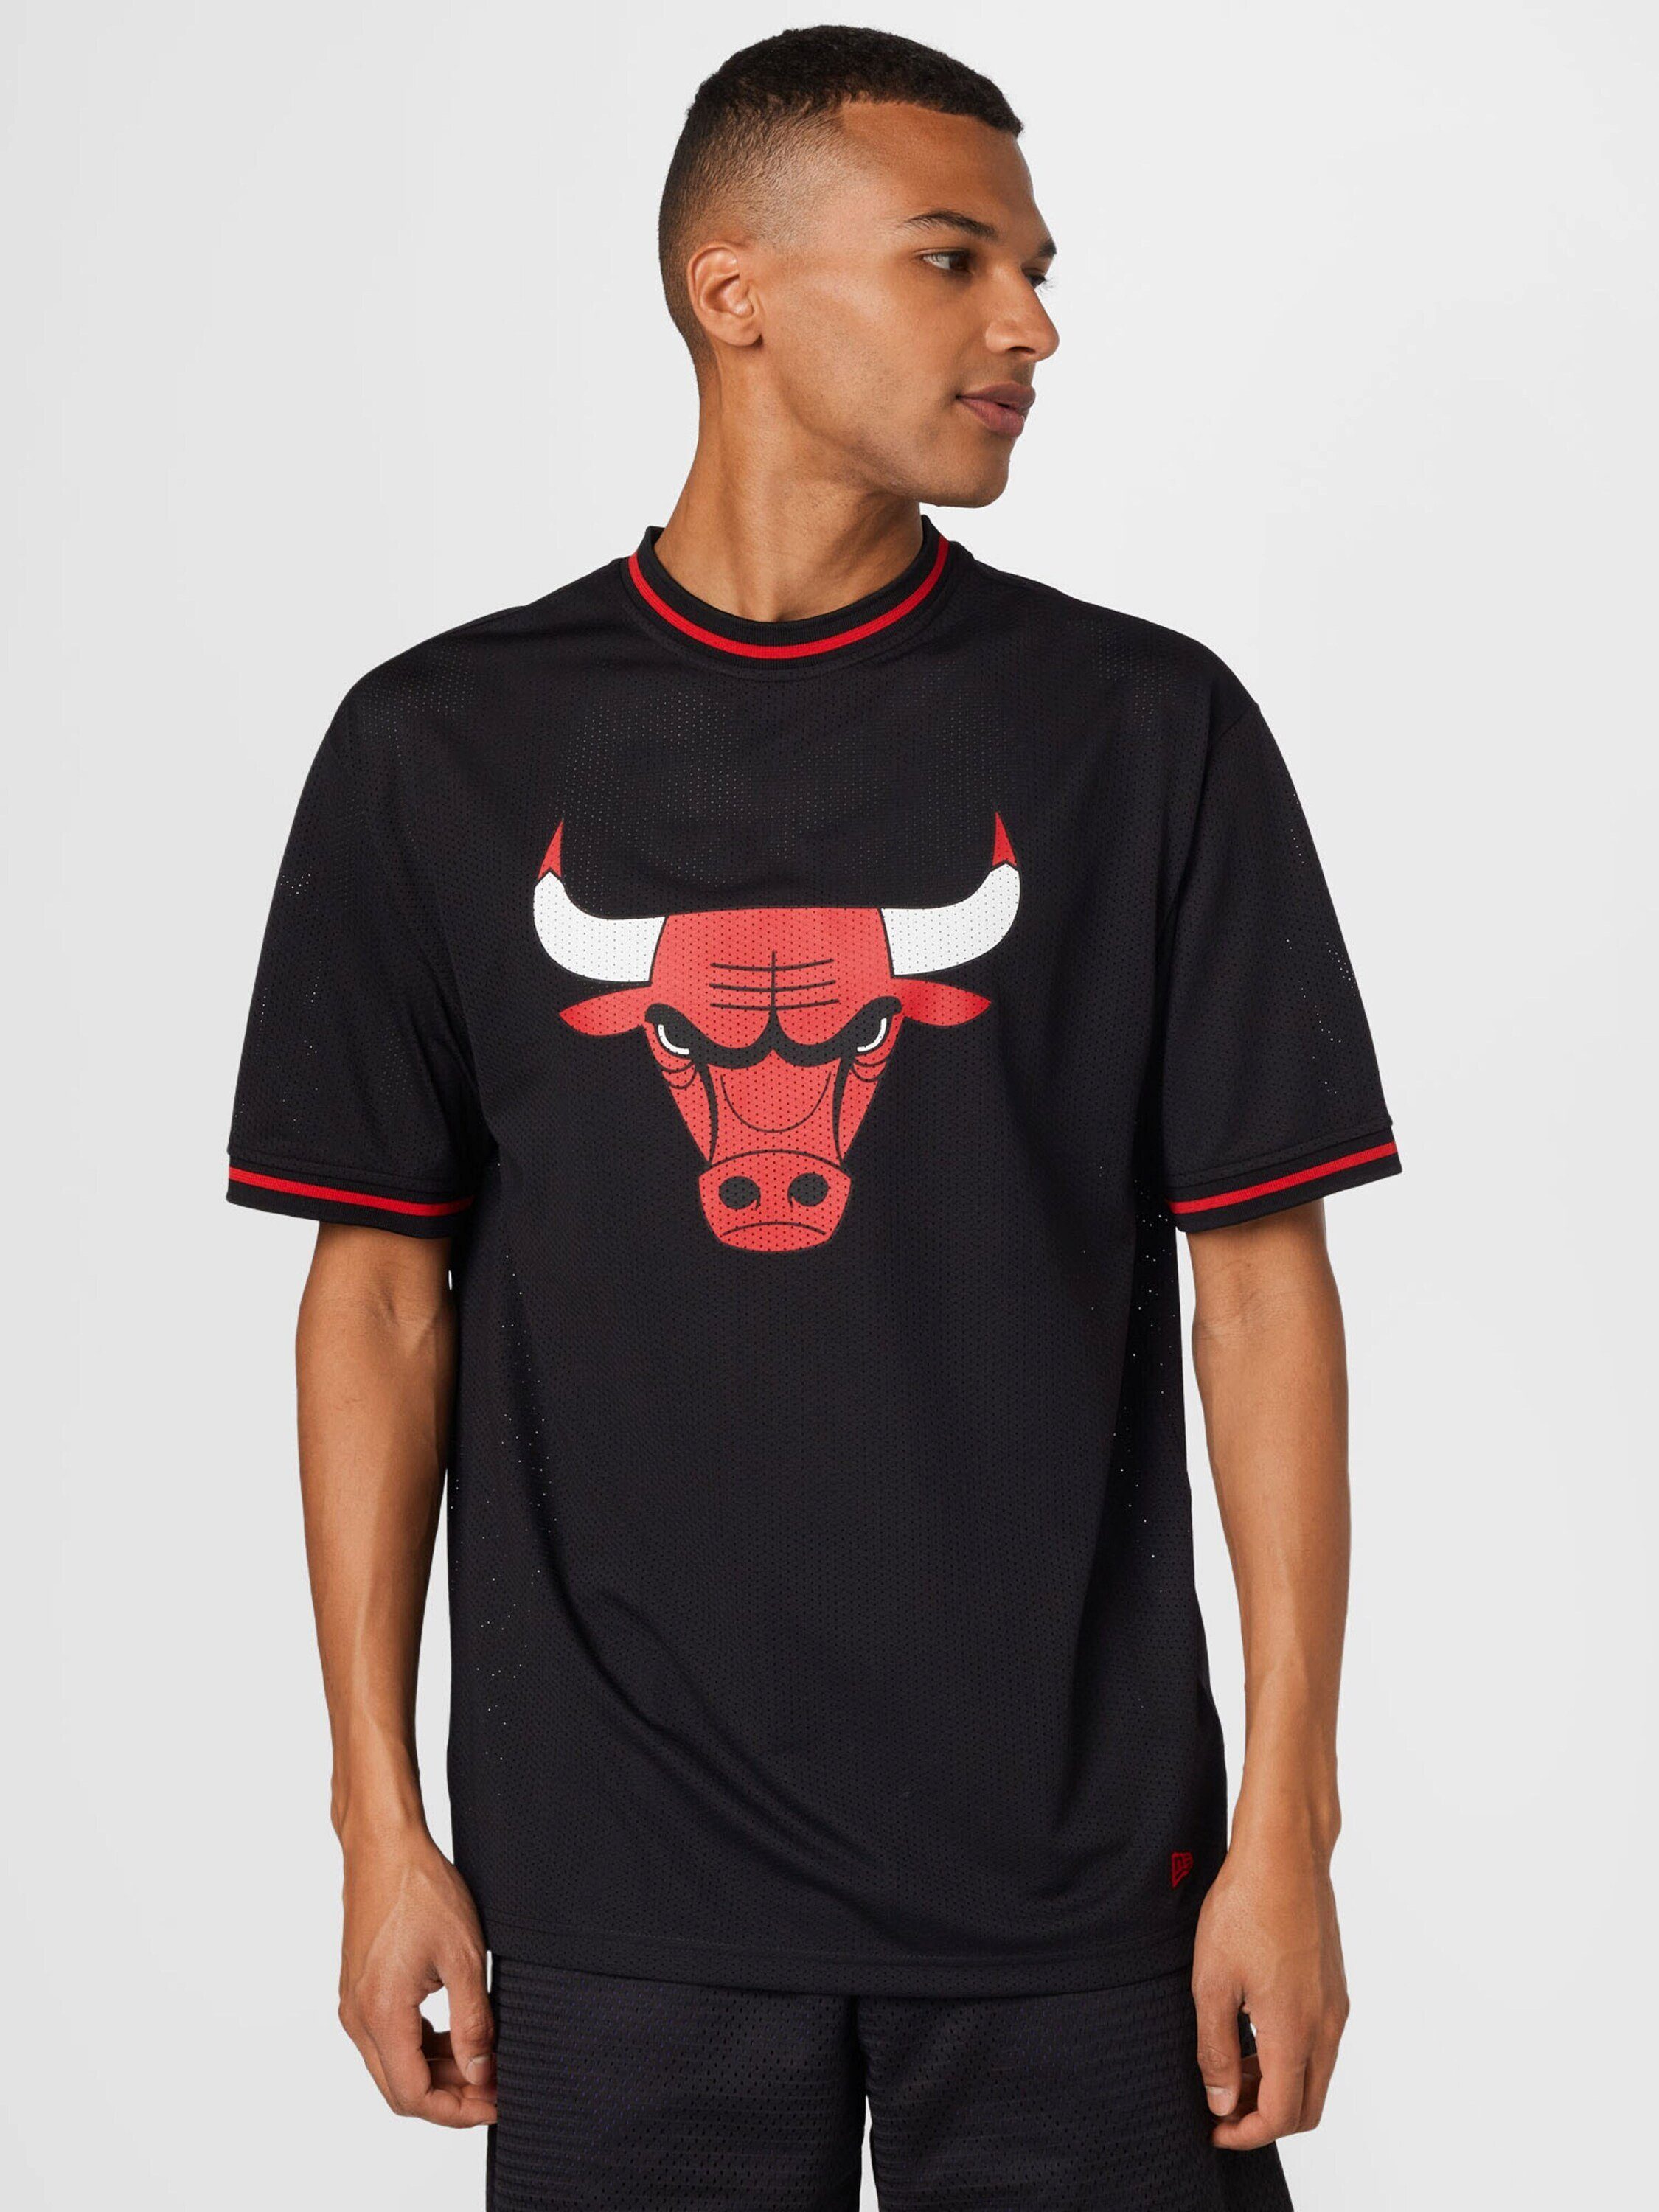 New Era T-Shirt Chicago Bulls (1-tlg)